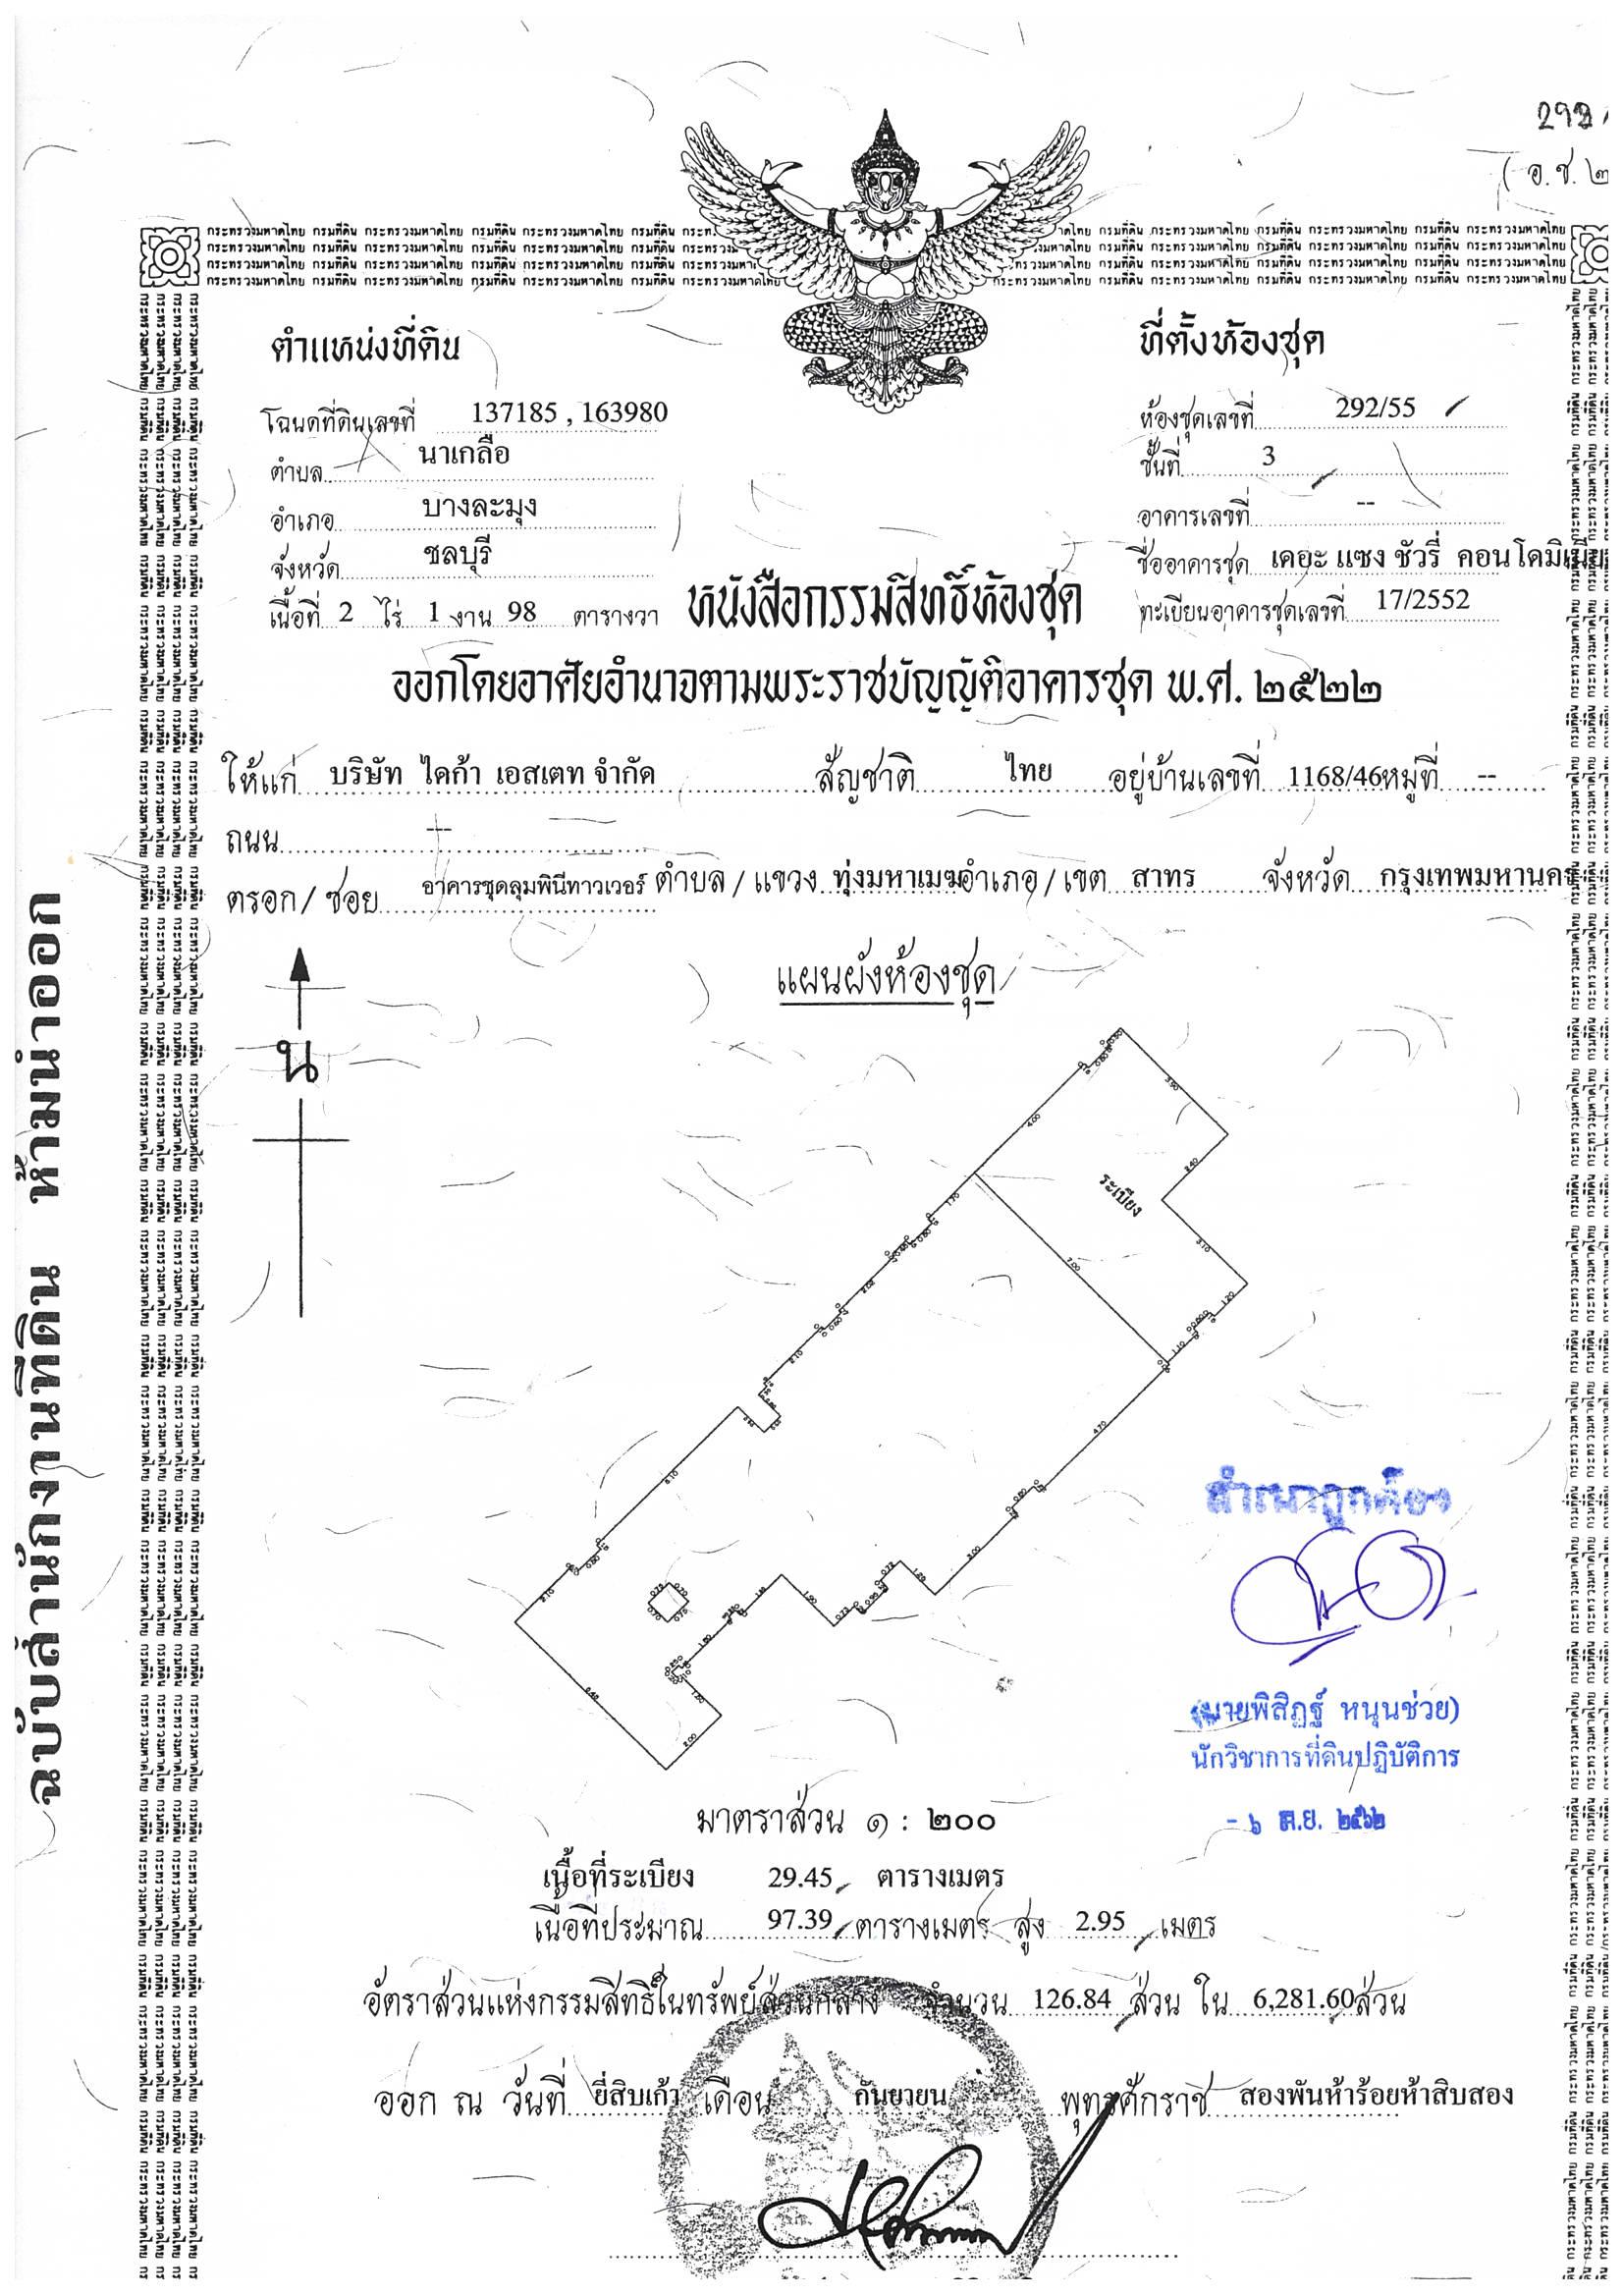 Выписка из реестра недвижимости Таиланда